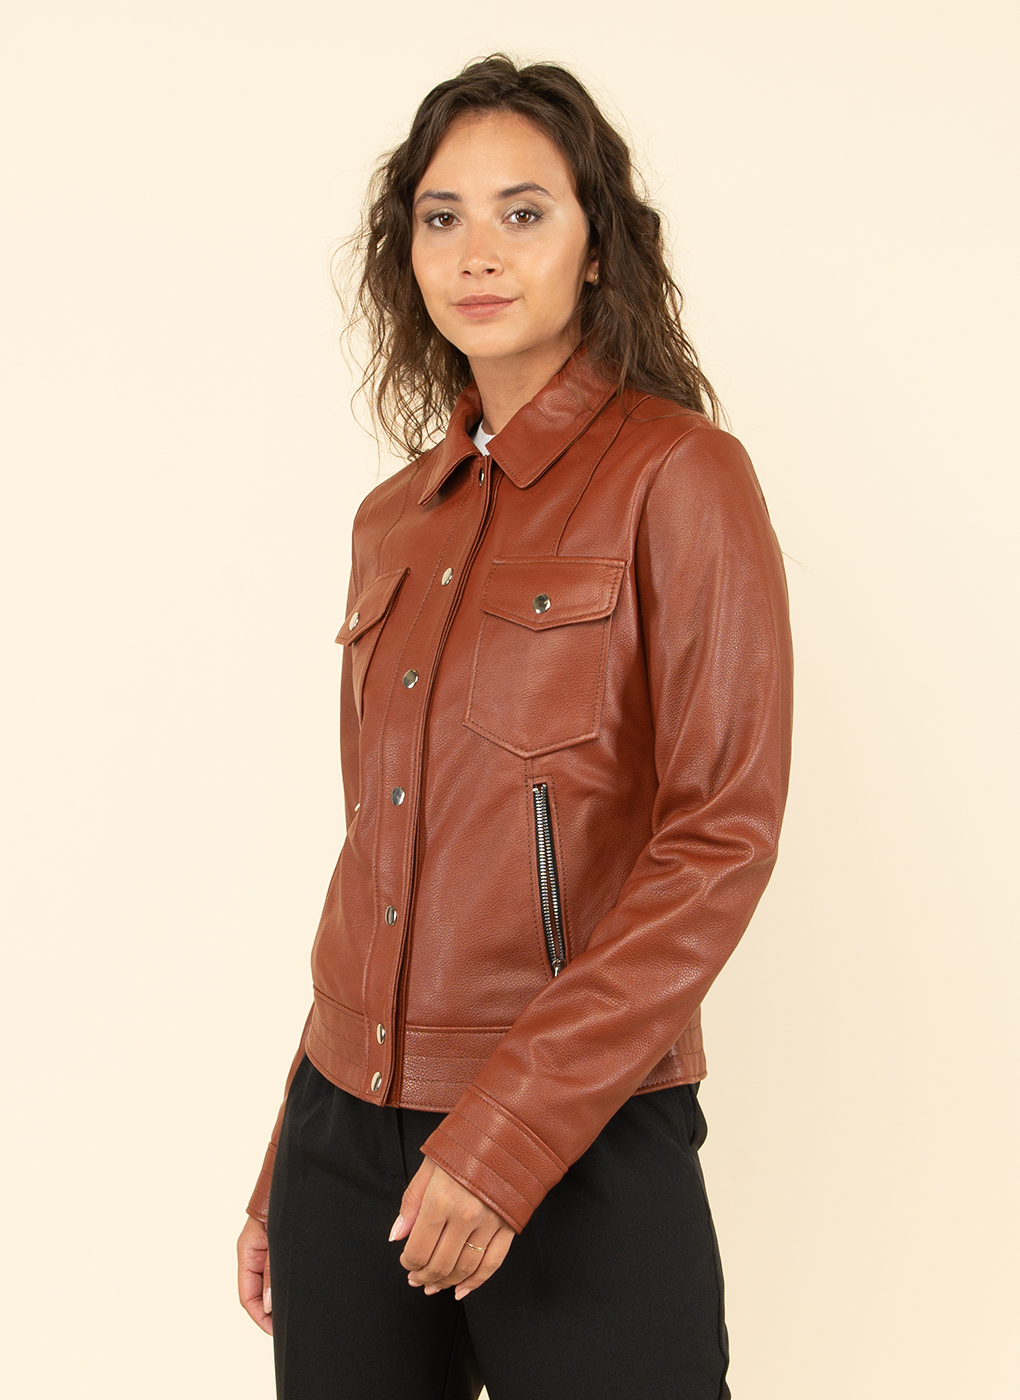 Кожаная куртка женская Каляев 48162 коричневая 50 RU